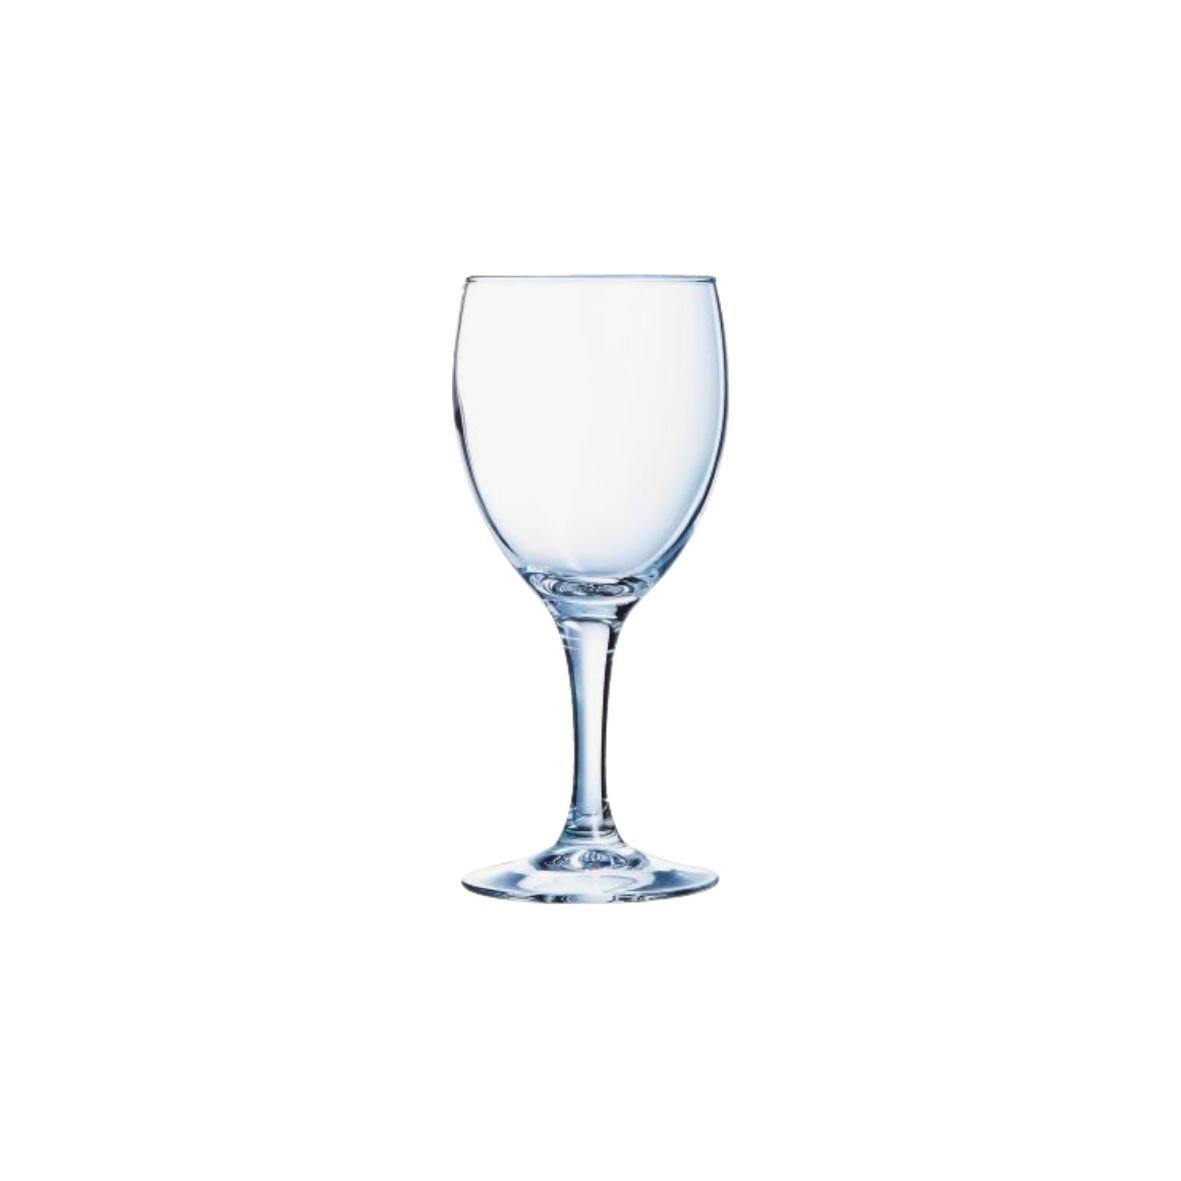 Allzweckglas "Napoli" in zwei Größen